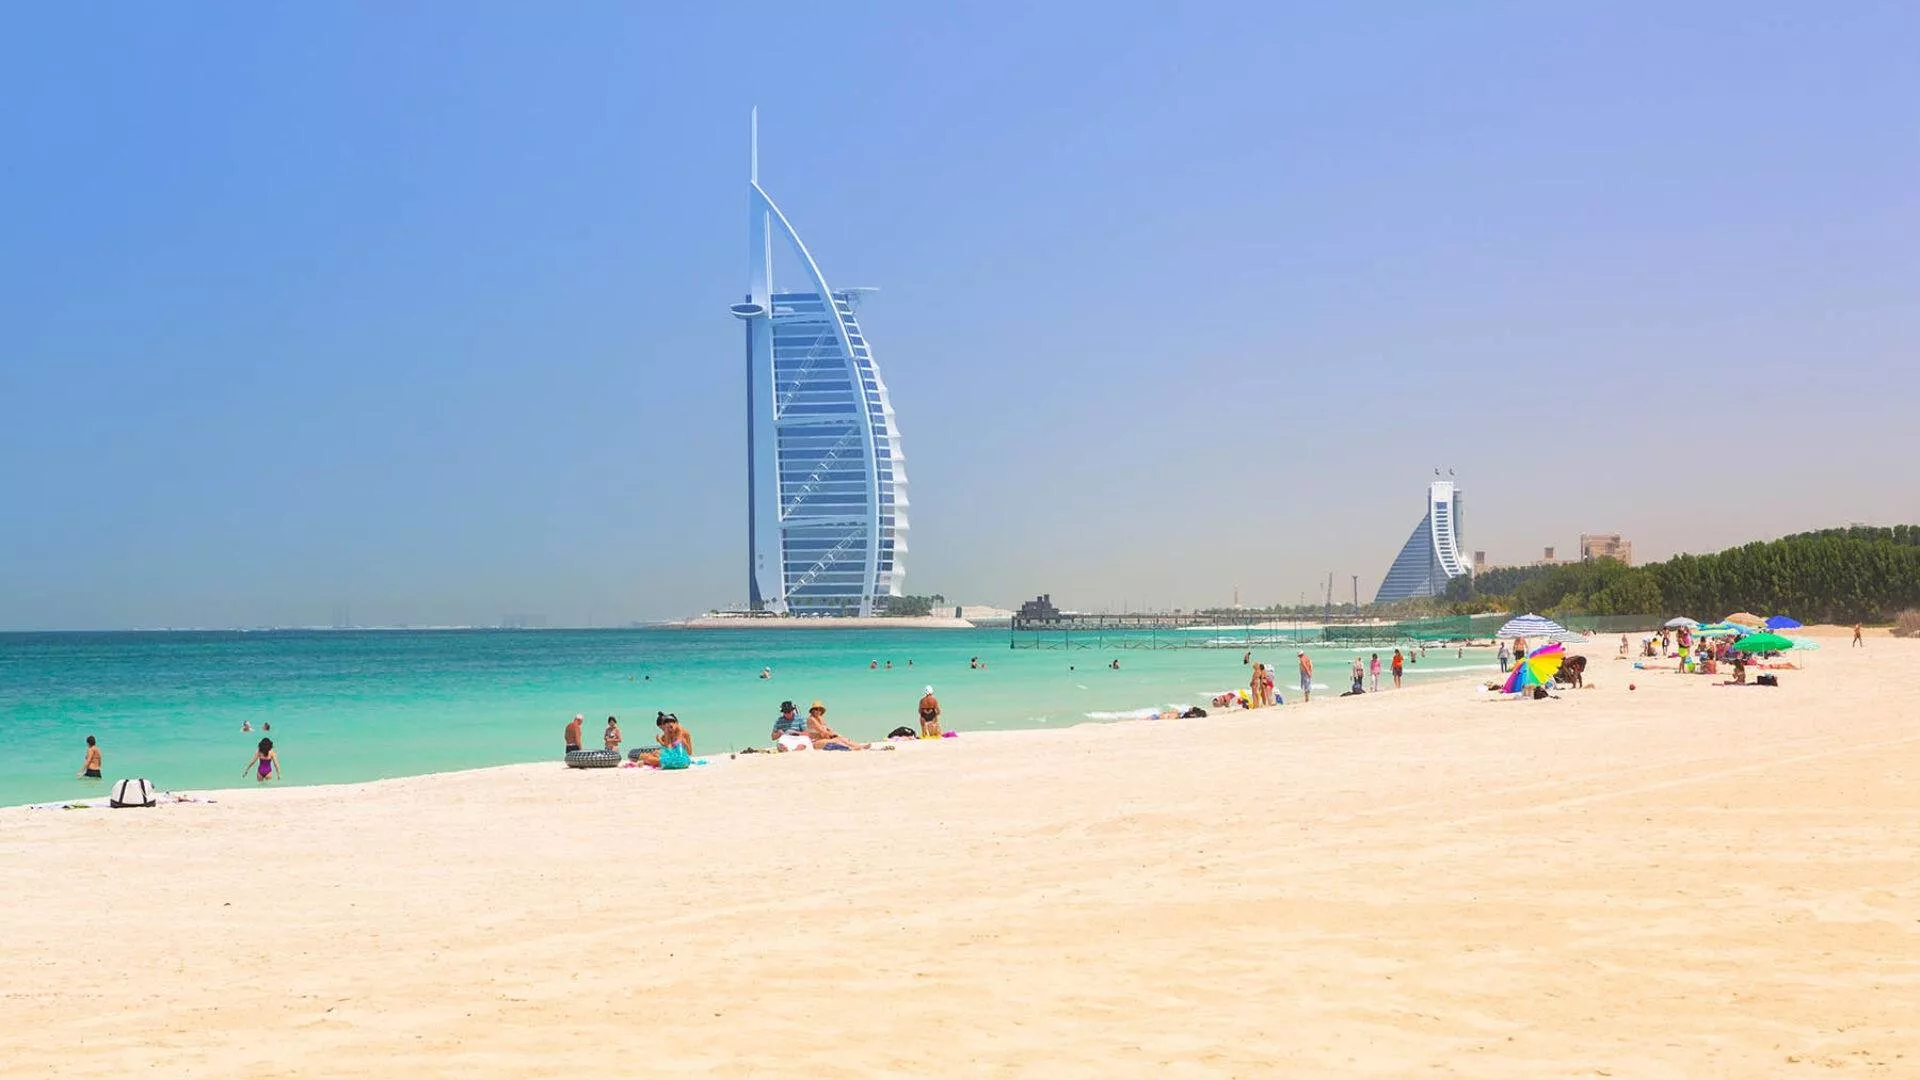 مراكز تجارية وسياحية في دبي تعيد فتح أبوابها، بعد تخفيف قيود حظر التجول بسبب فيروس كورونا